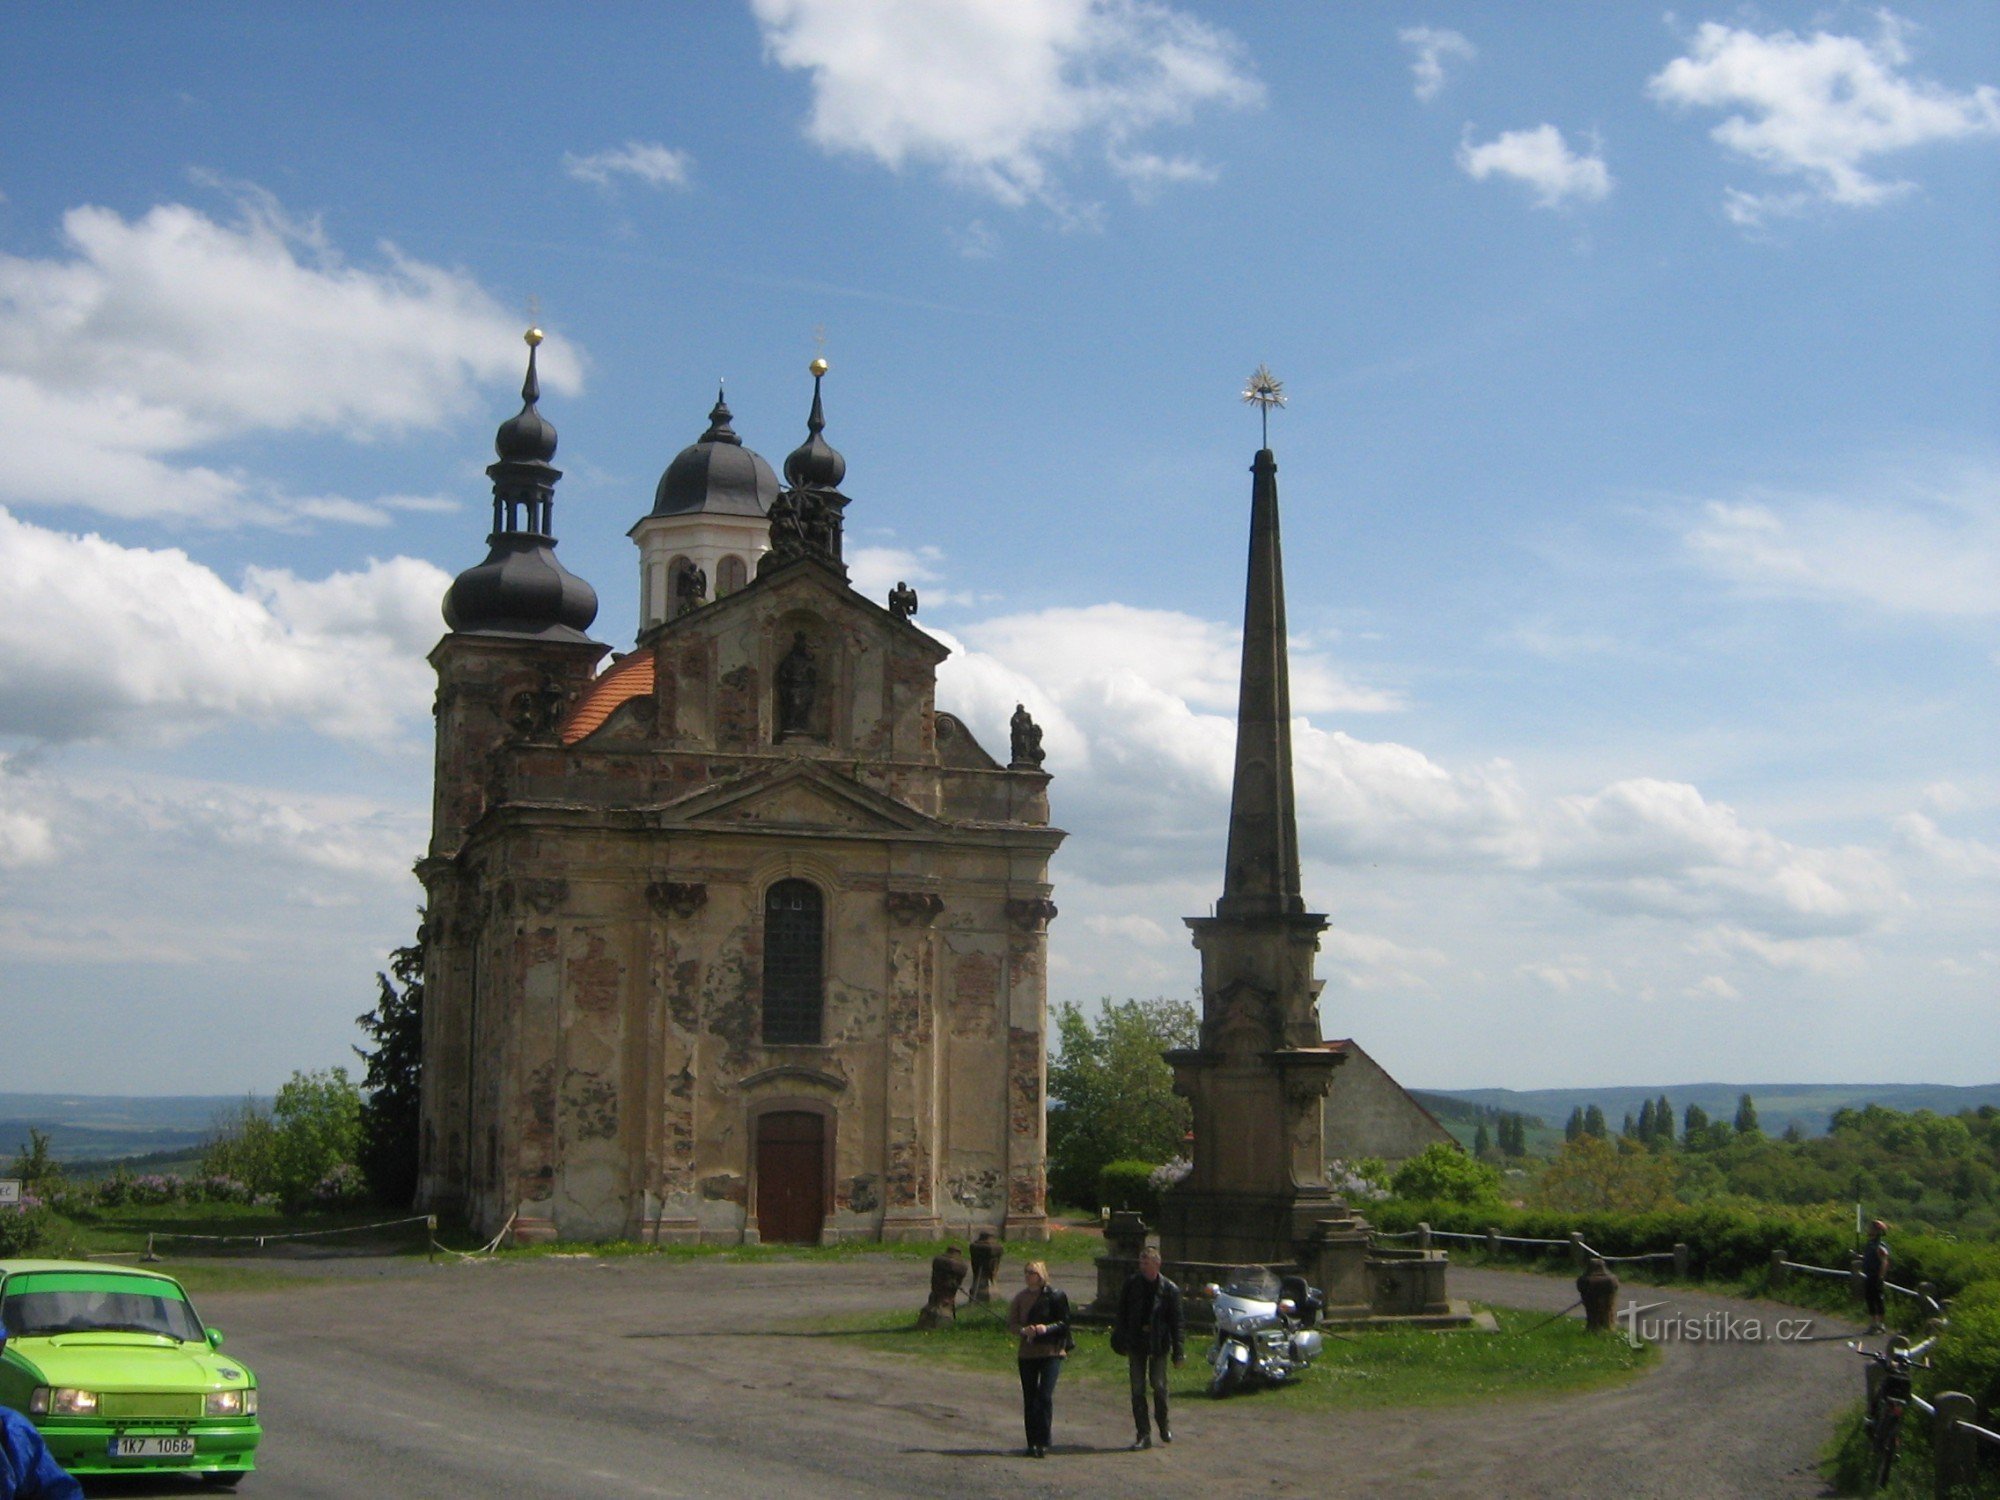 Valeč - Den Hellige Treenigheds Kirke